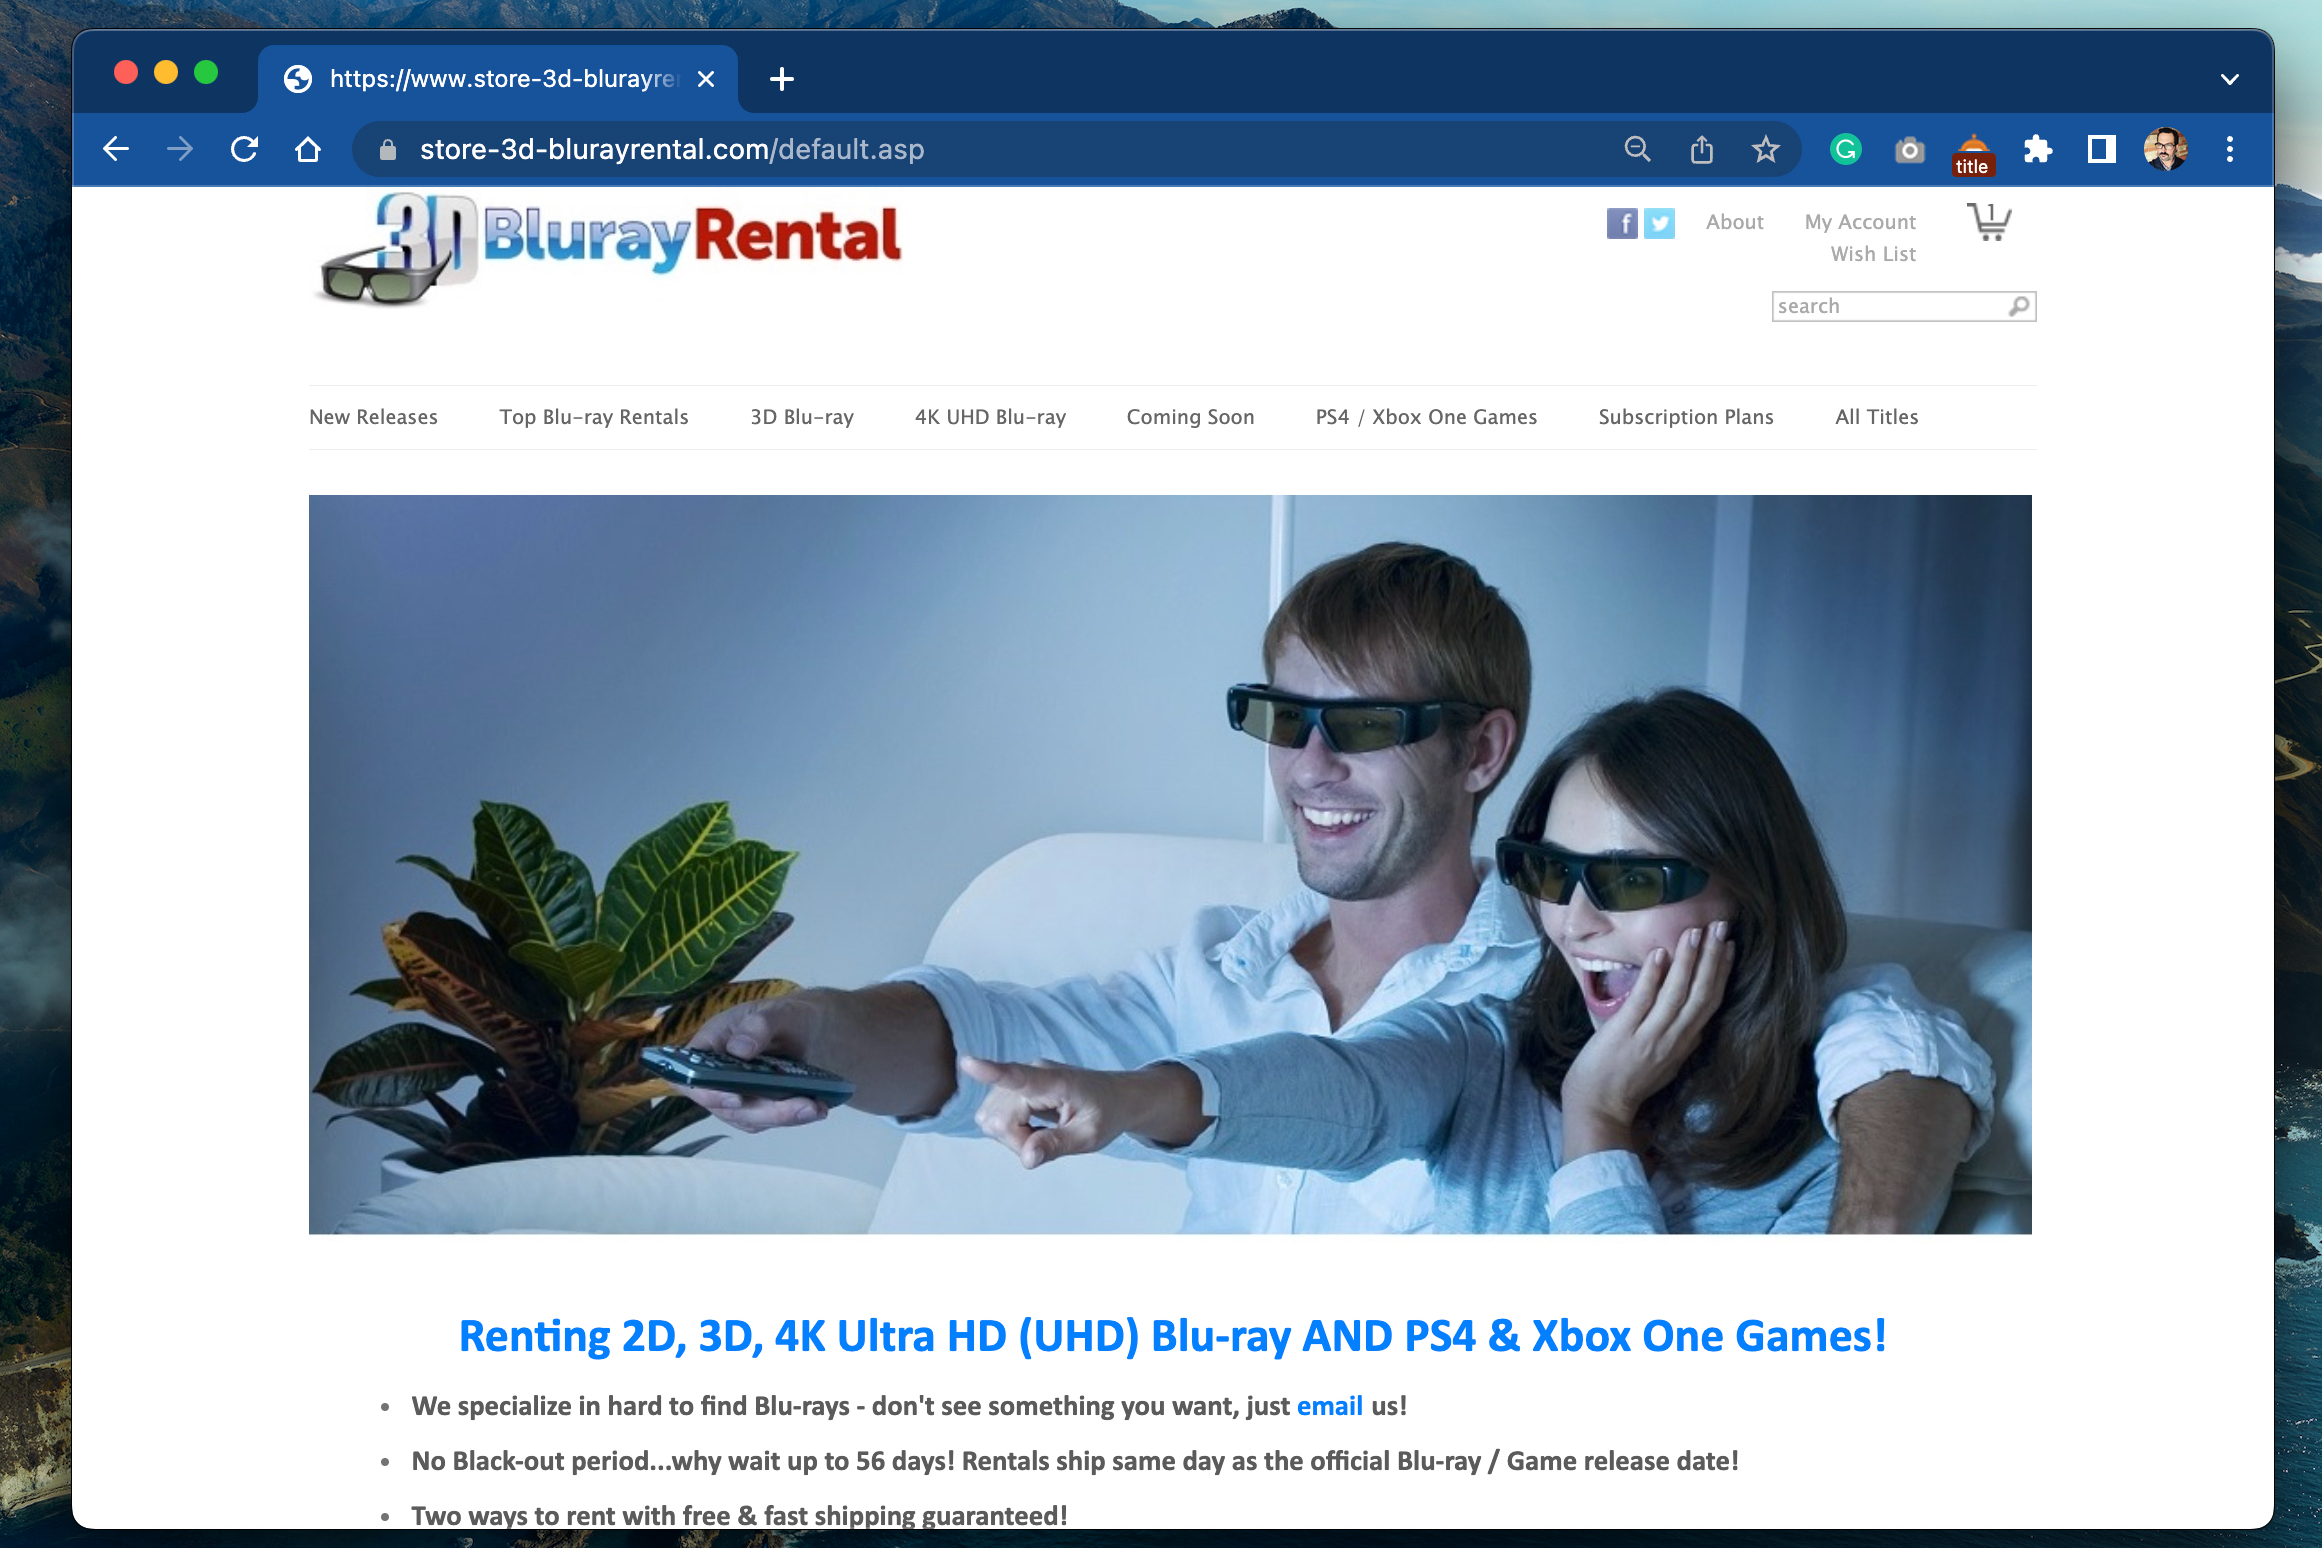 3D Blu-ray Rental homepage. 